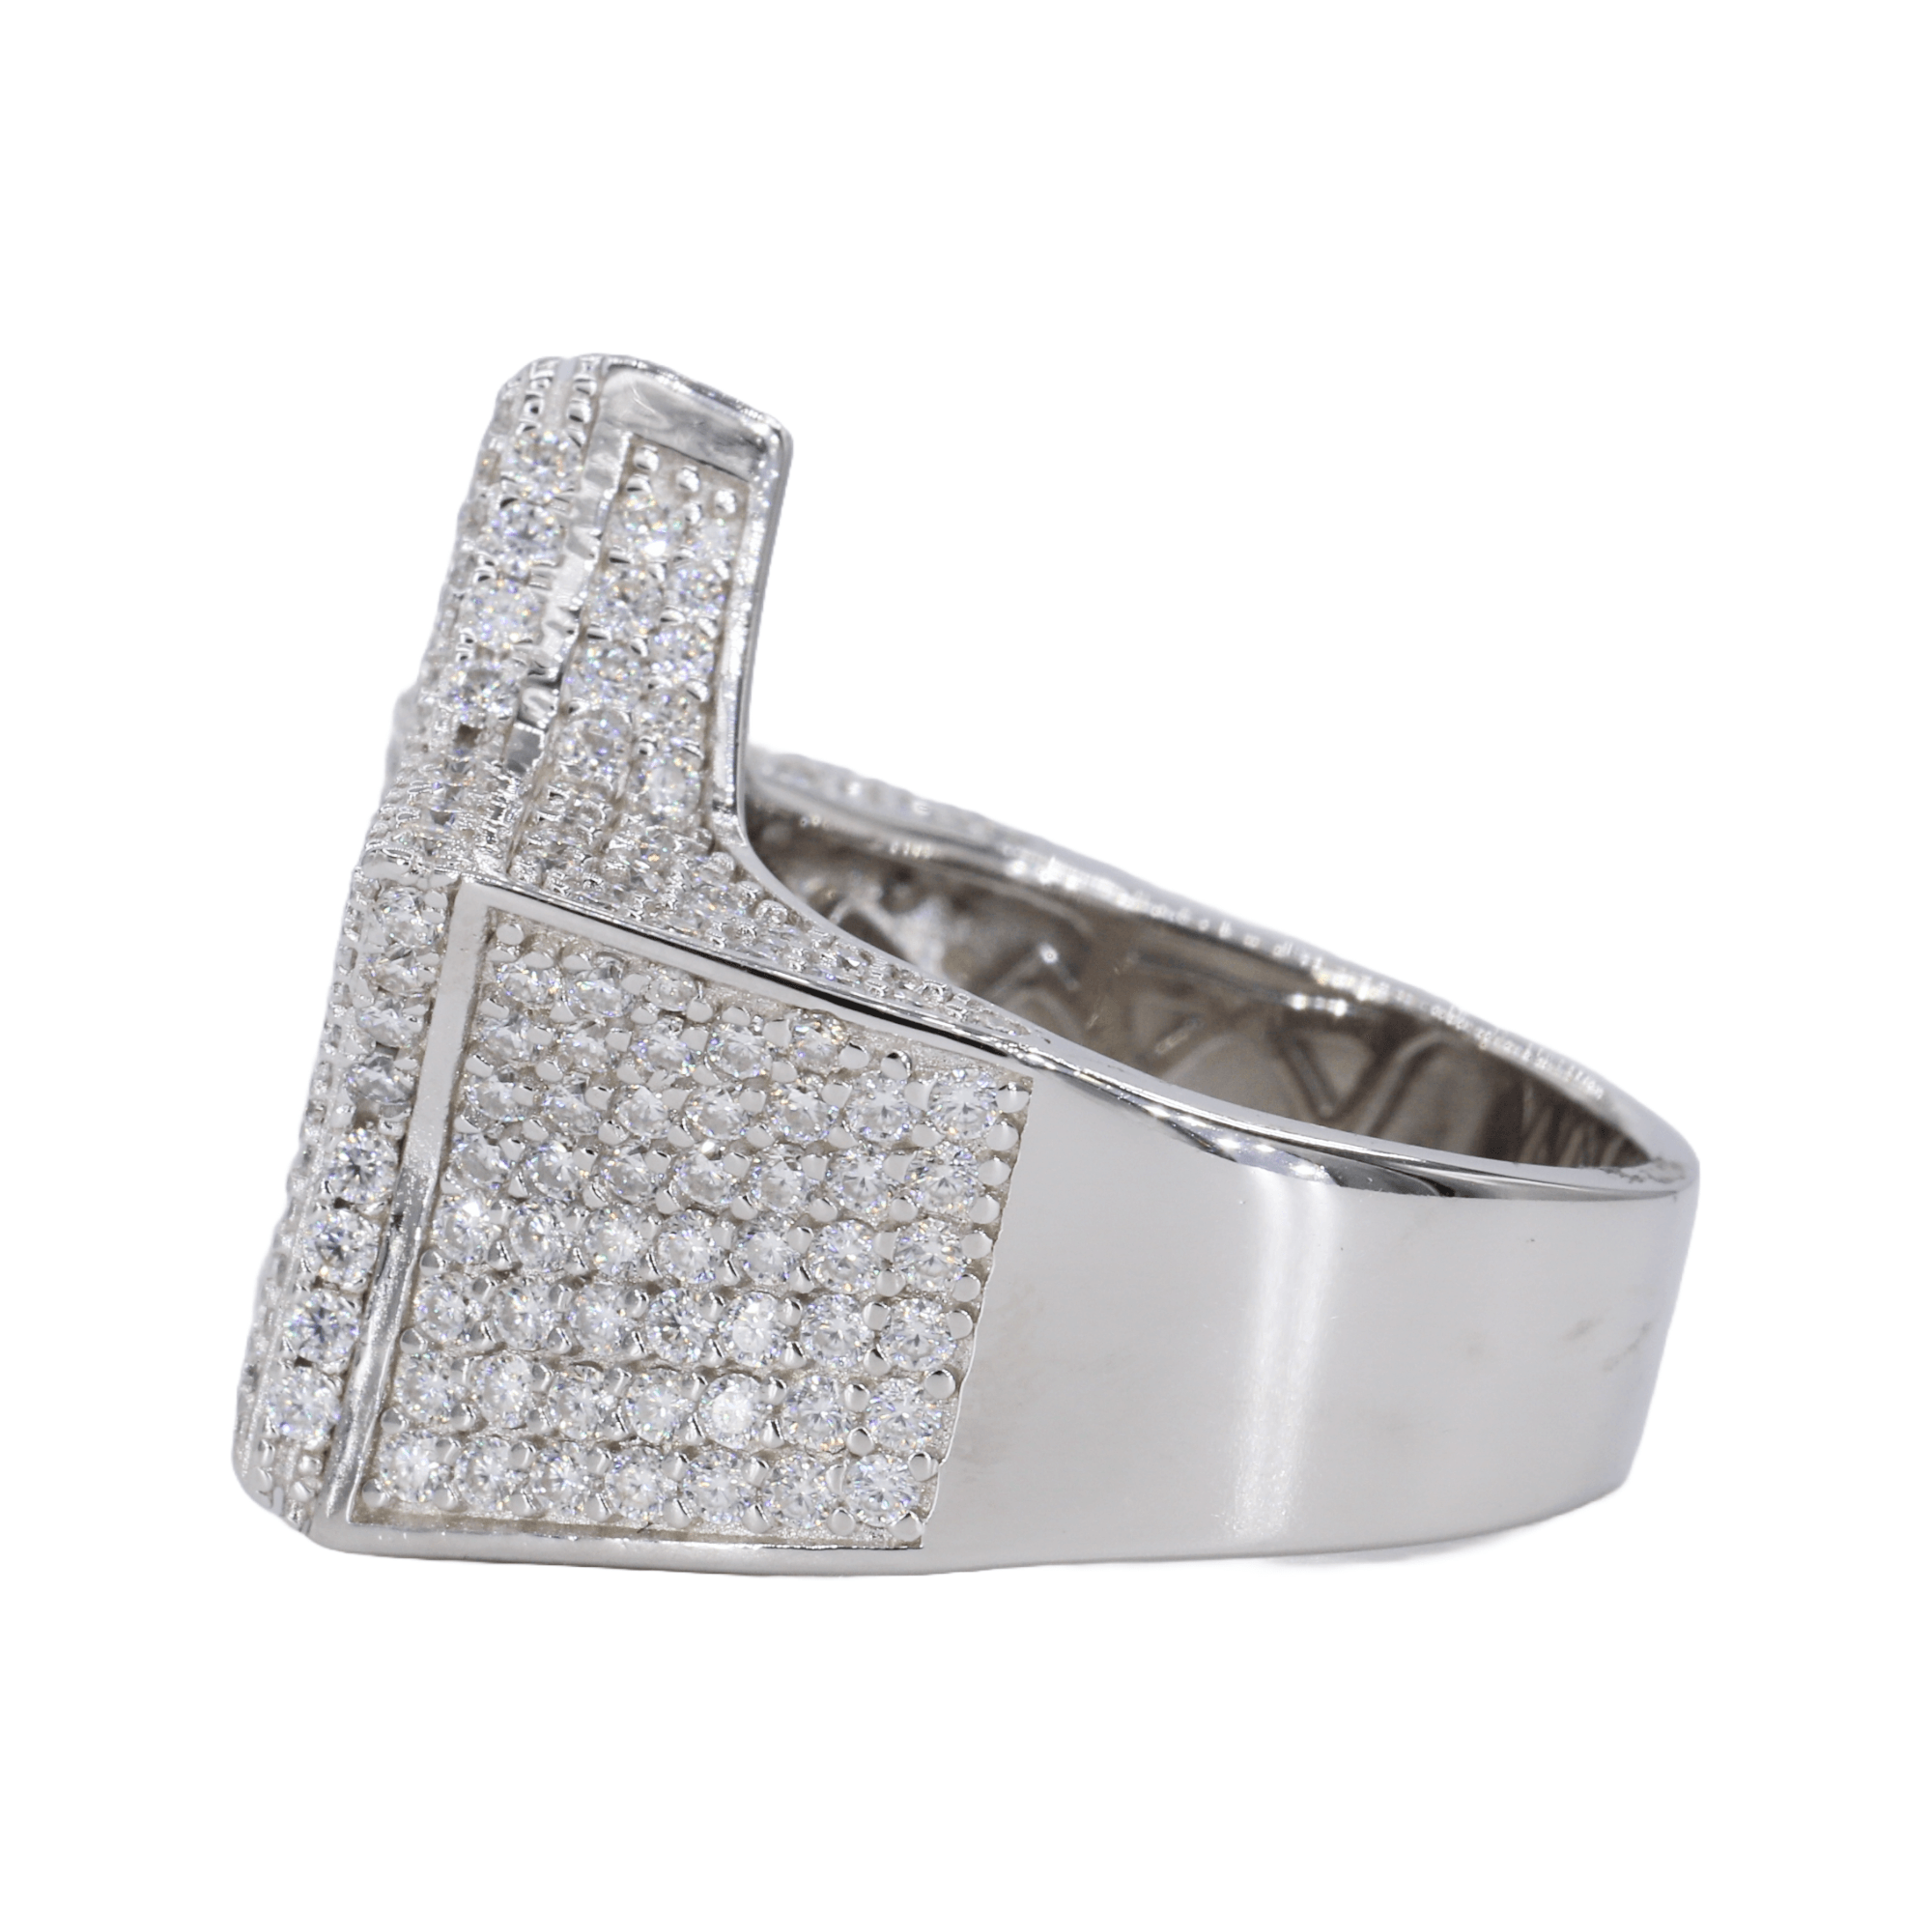 Baguette Stripped Star VVS Moissanite Diamond Ring - Moissanite Bazaar - moissanitebazaar.com